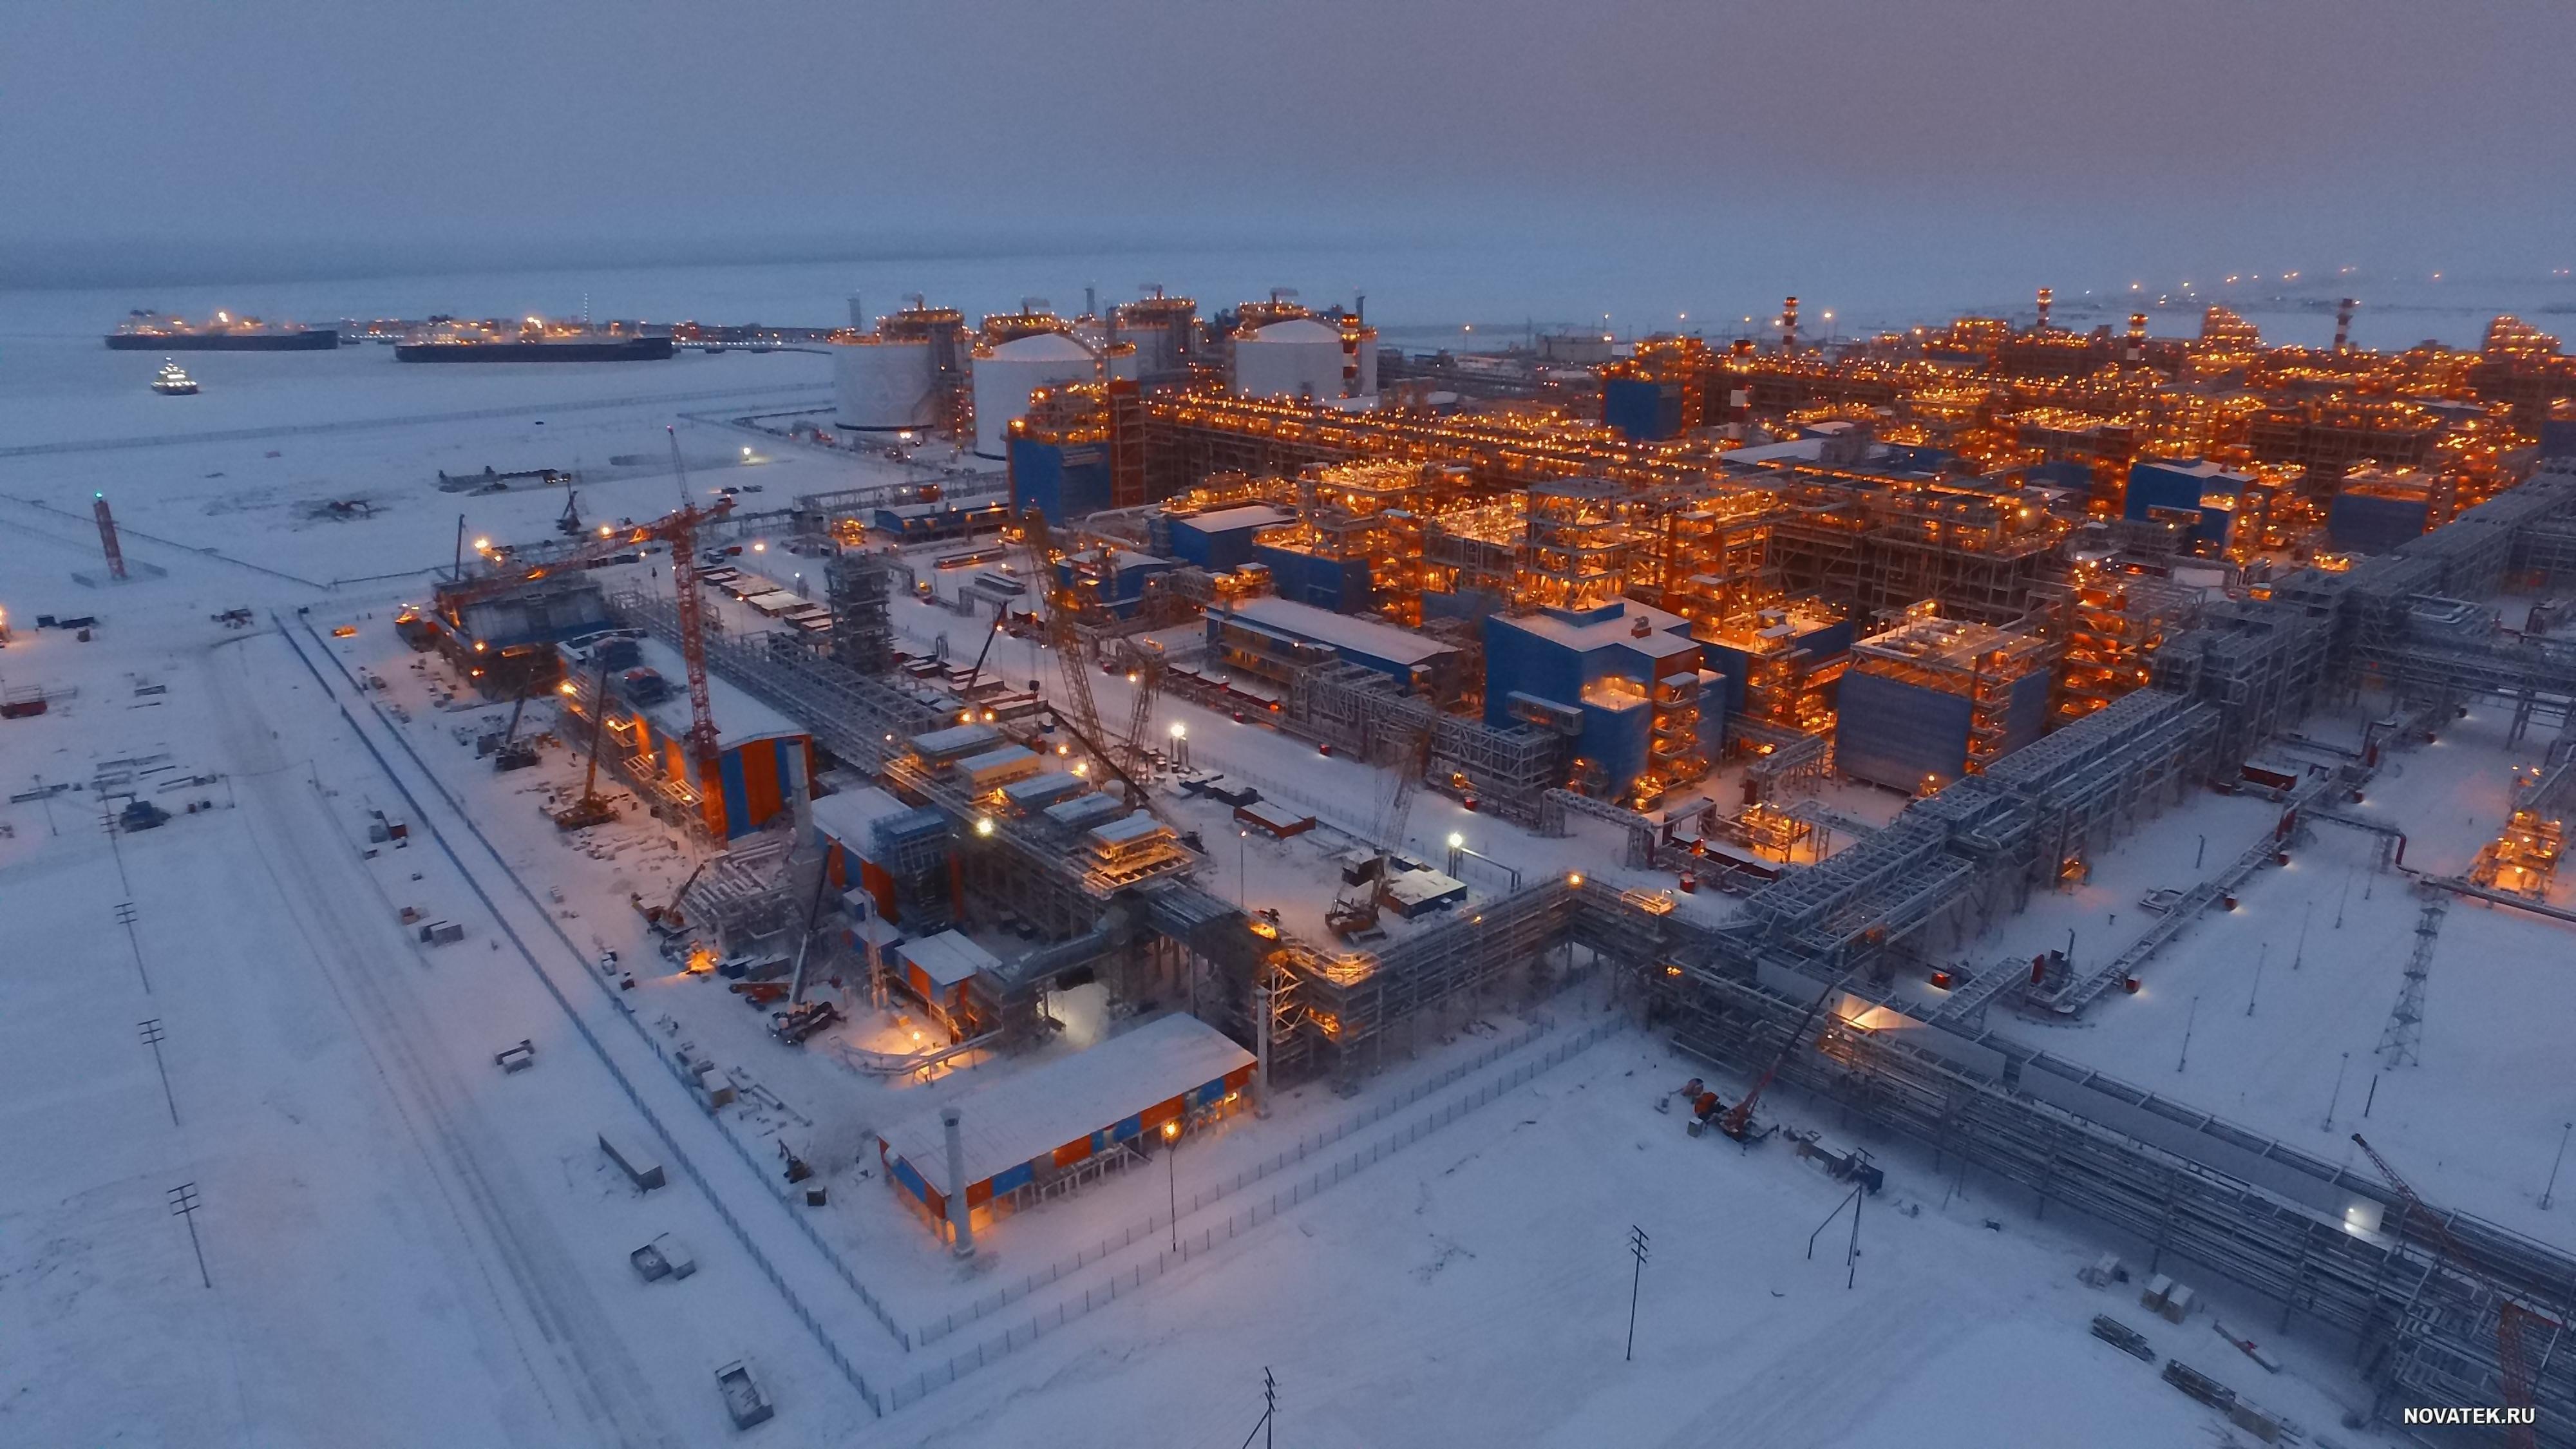 Arctique : l'usine russe géante de gaz reçoit 9,5 milliards d'euros, la France désavoue le projet malgré Total